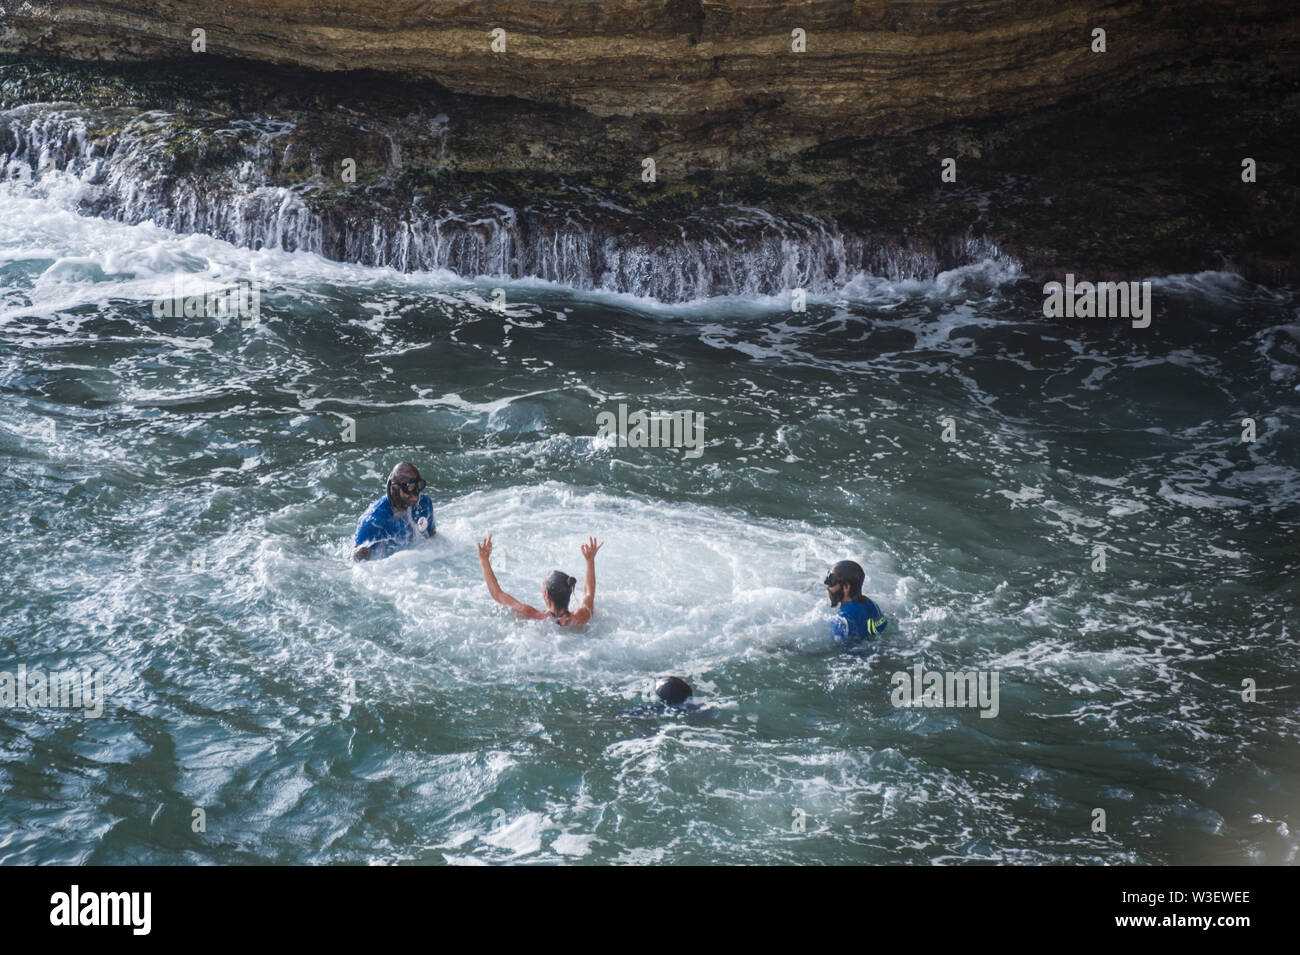 Concurrents sauter de rochers Rauche, Beyrouth, le lancement d'une hauteur de jusqu'à 27m, pour le Red Bull Cliff Diving world series 2019 Banque D'Images